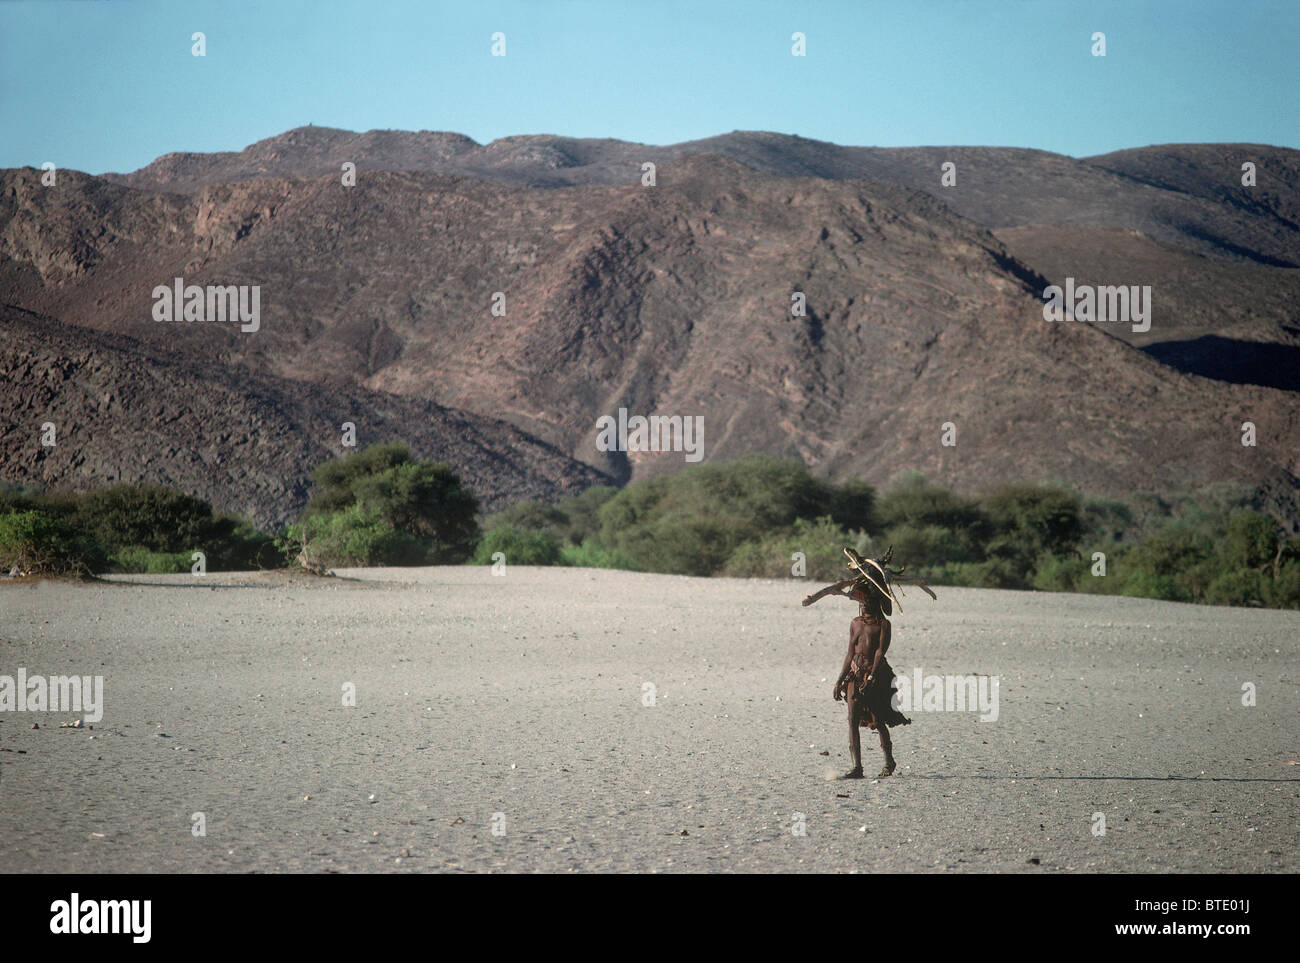 Vue panoramique d'un seul femme Himba à transporter le bois sur sa tête dans un paysage aride Banque D'Images